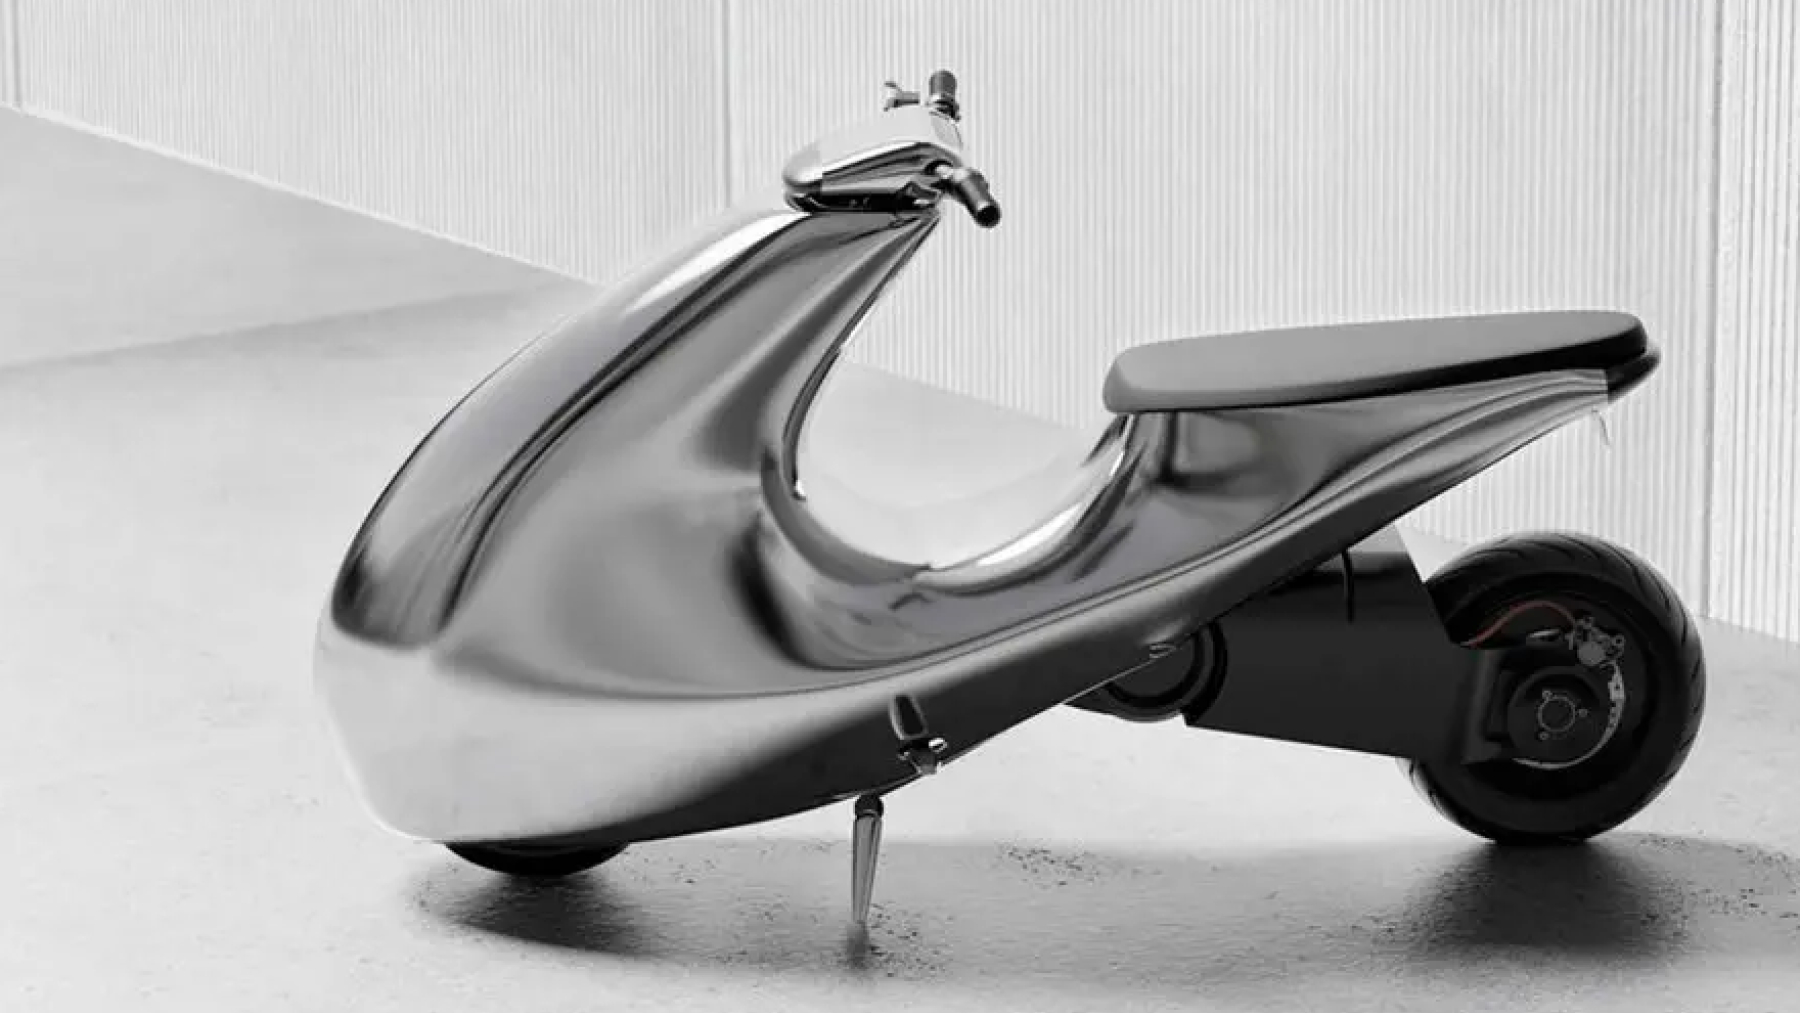 Querrás esta original ‘scooter’ eléctrica de estética futurista